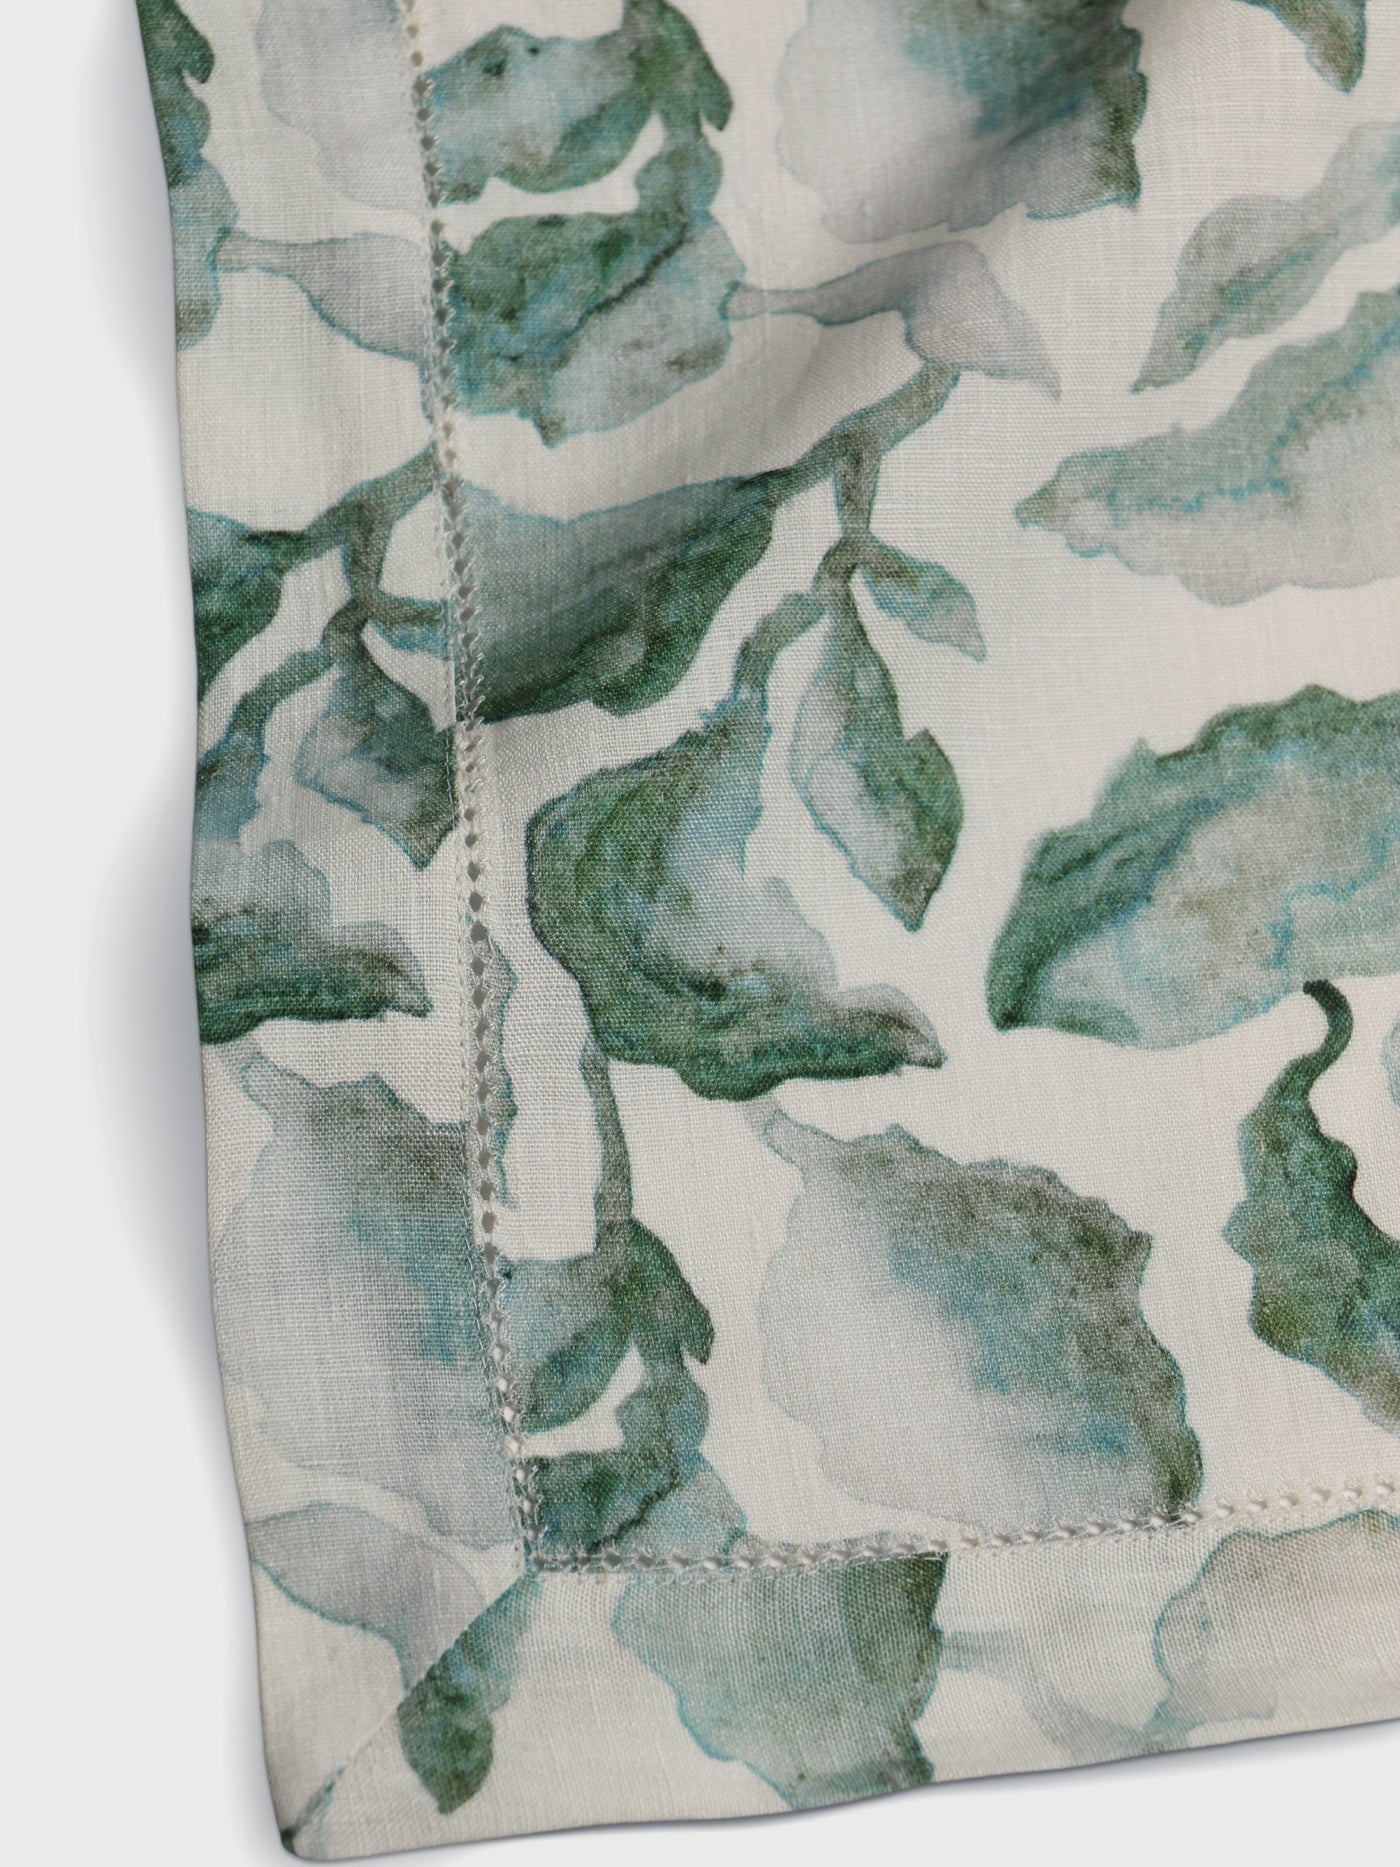 Cascade Teal Linen Table Cover